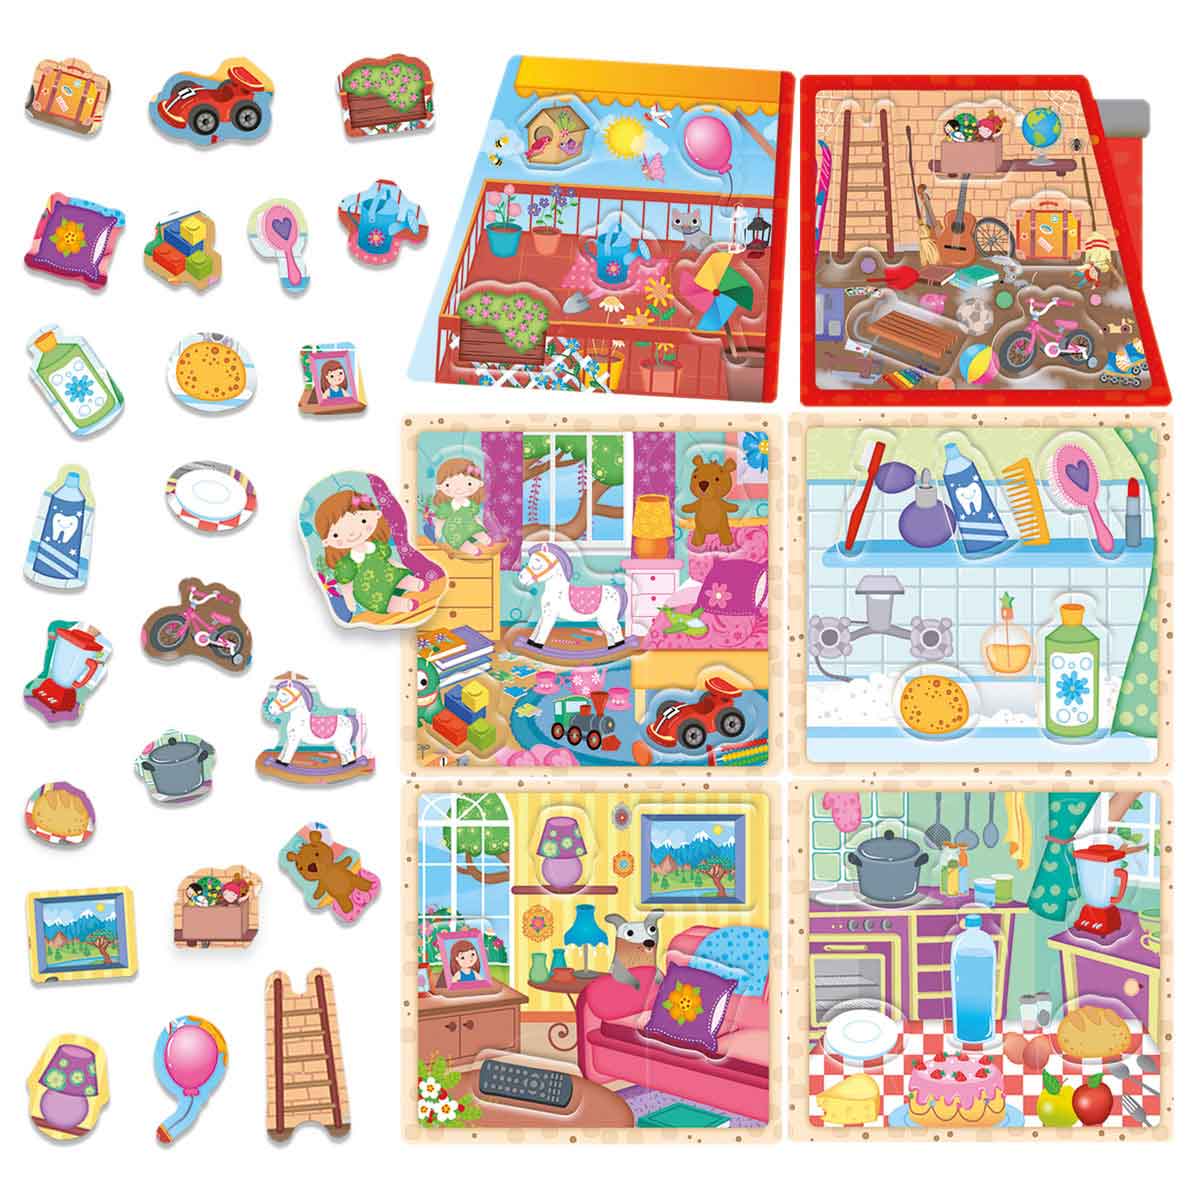 Montessori Activity Kit - My Little House